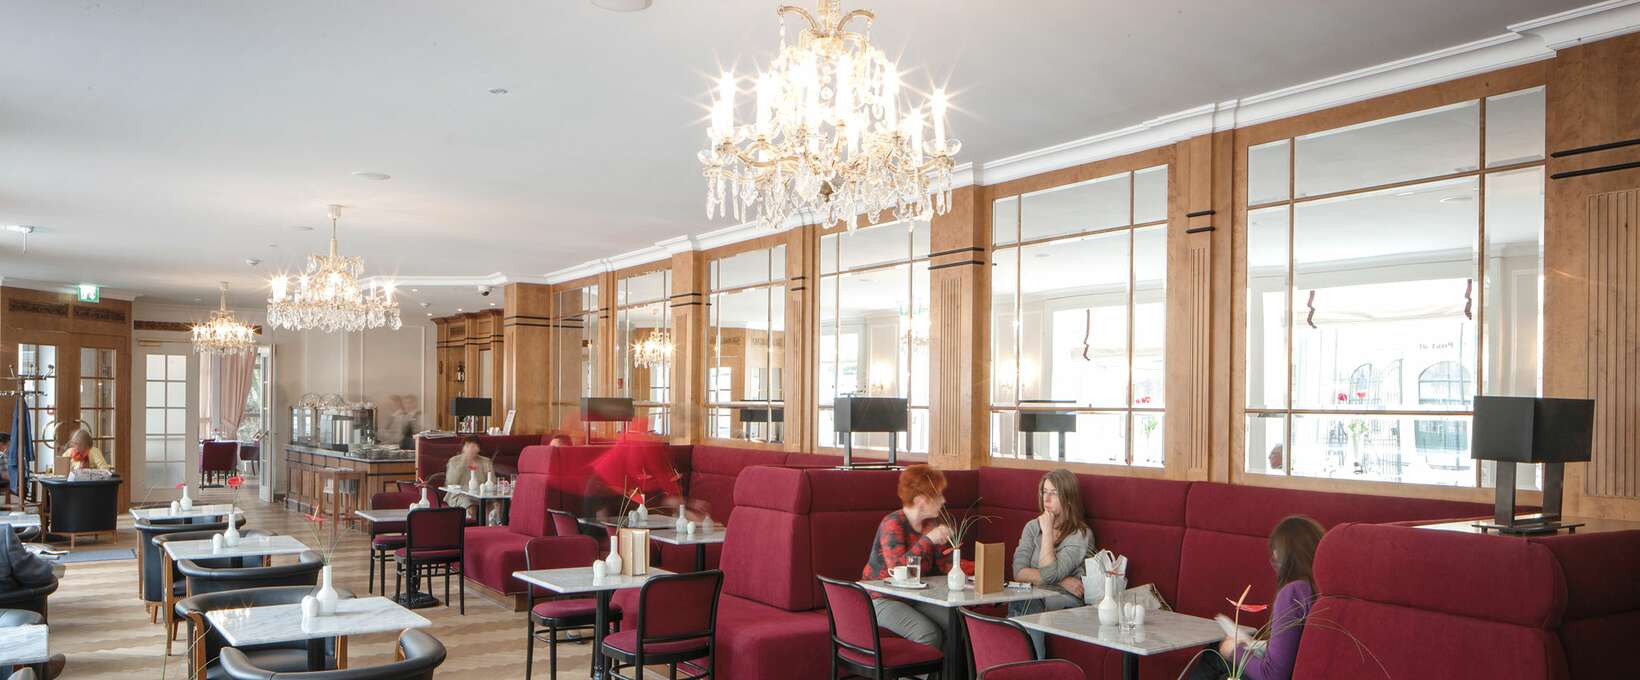 Schlosscafé mit Sitzlounge | Parkhotel Schönbrunn in Wien